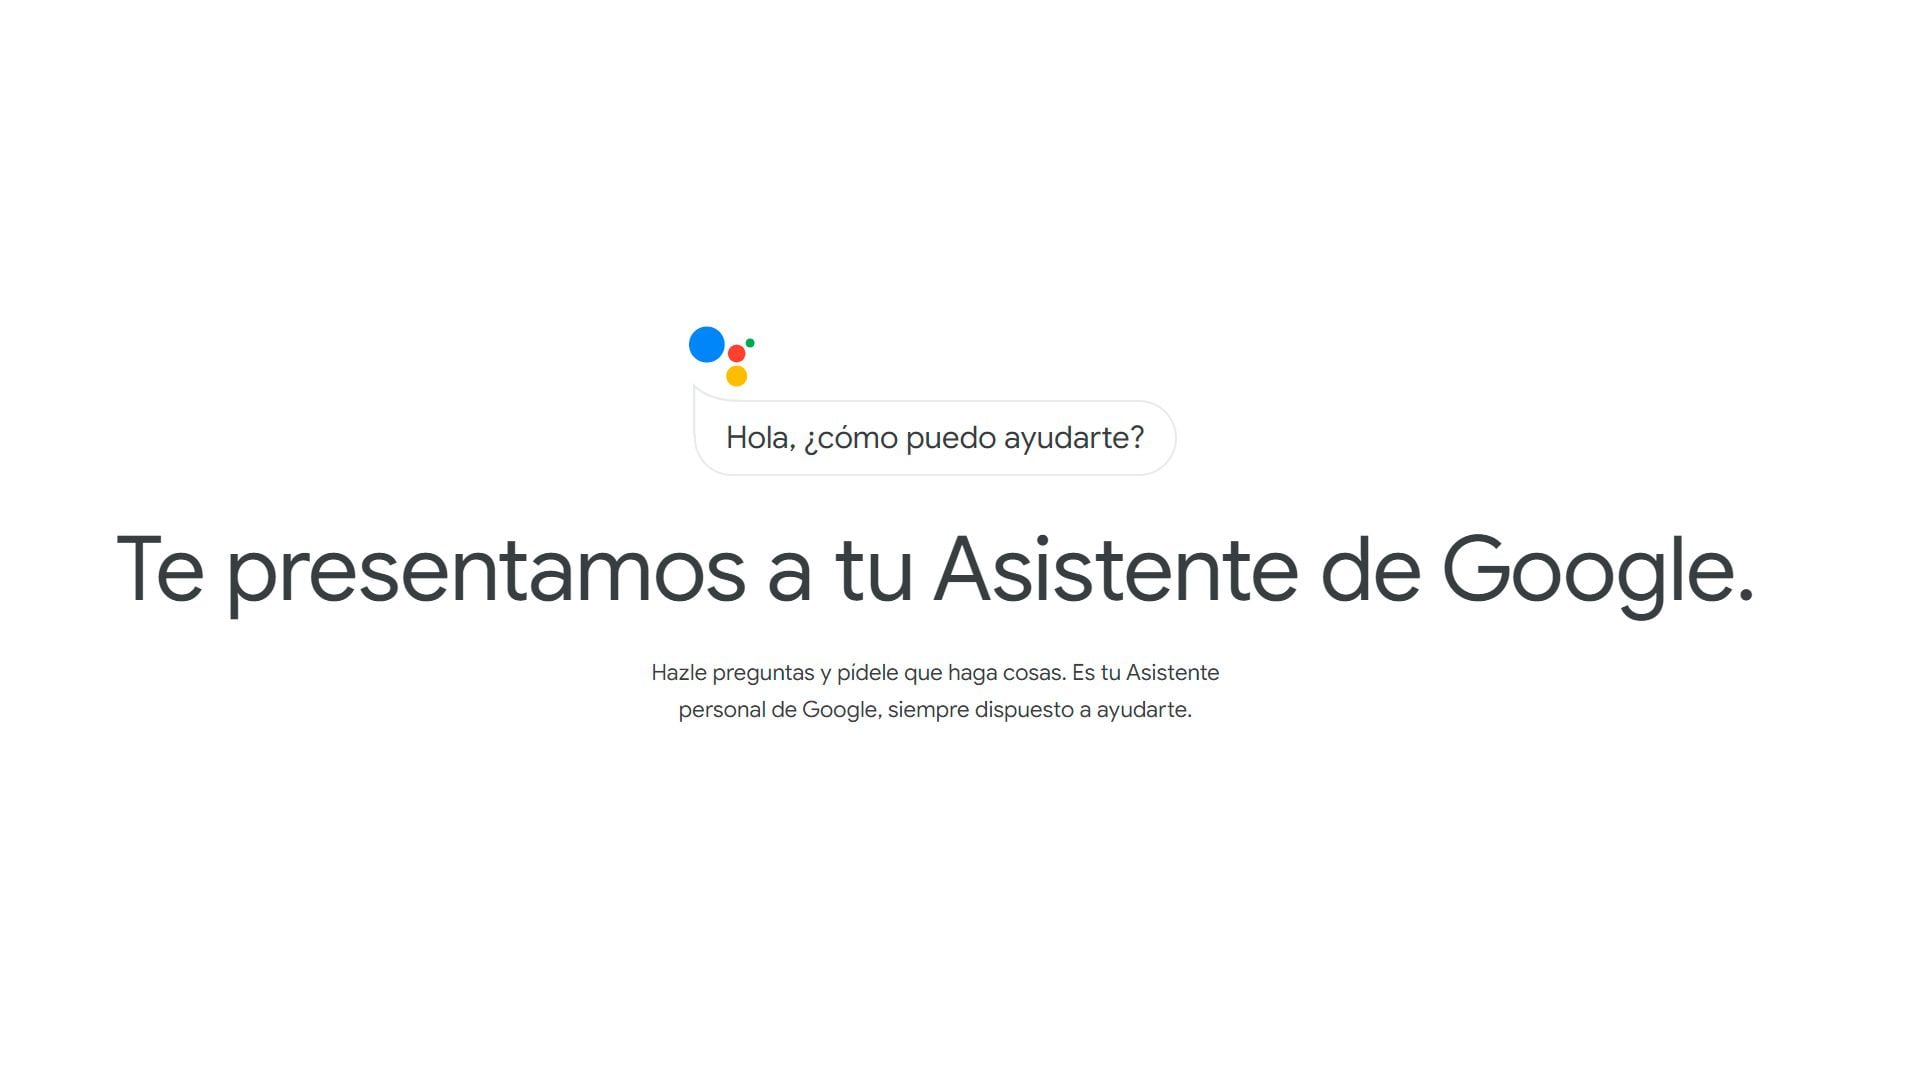 La empresa busca mejorar la experiencia del usuario centrándose en la calidad y fiabilidad del asistente virtual. (Google Assistant)